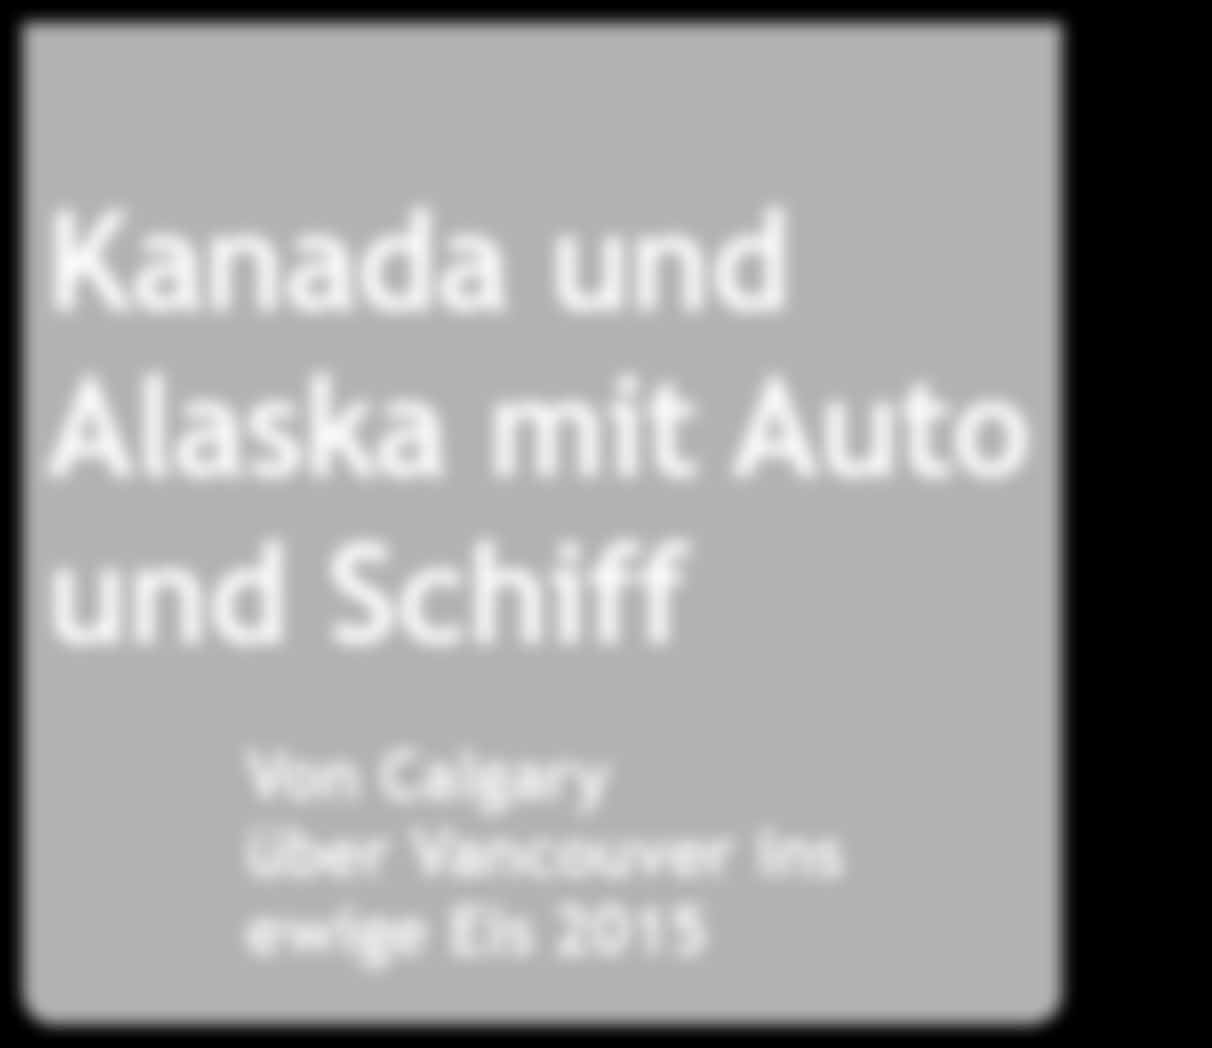 Kanada und Alaska mit Auto Bildunterschrift und Schiff Bildunterschrift Von Calgary